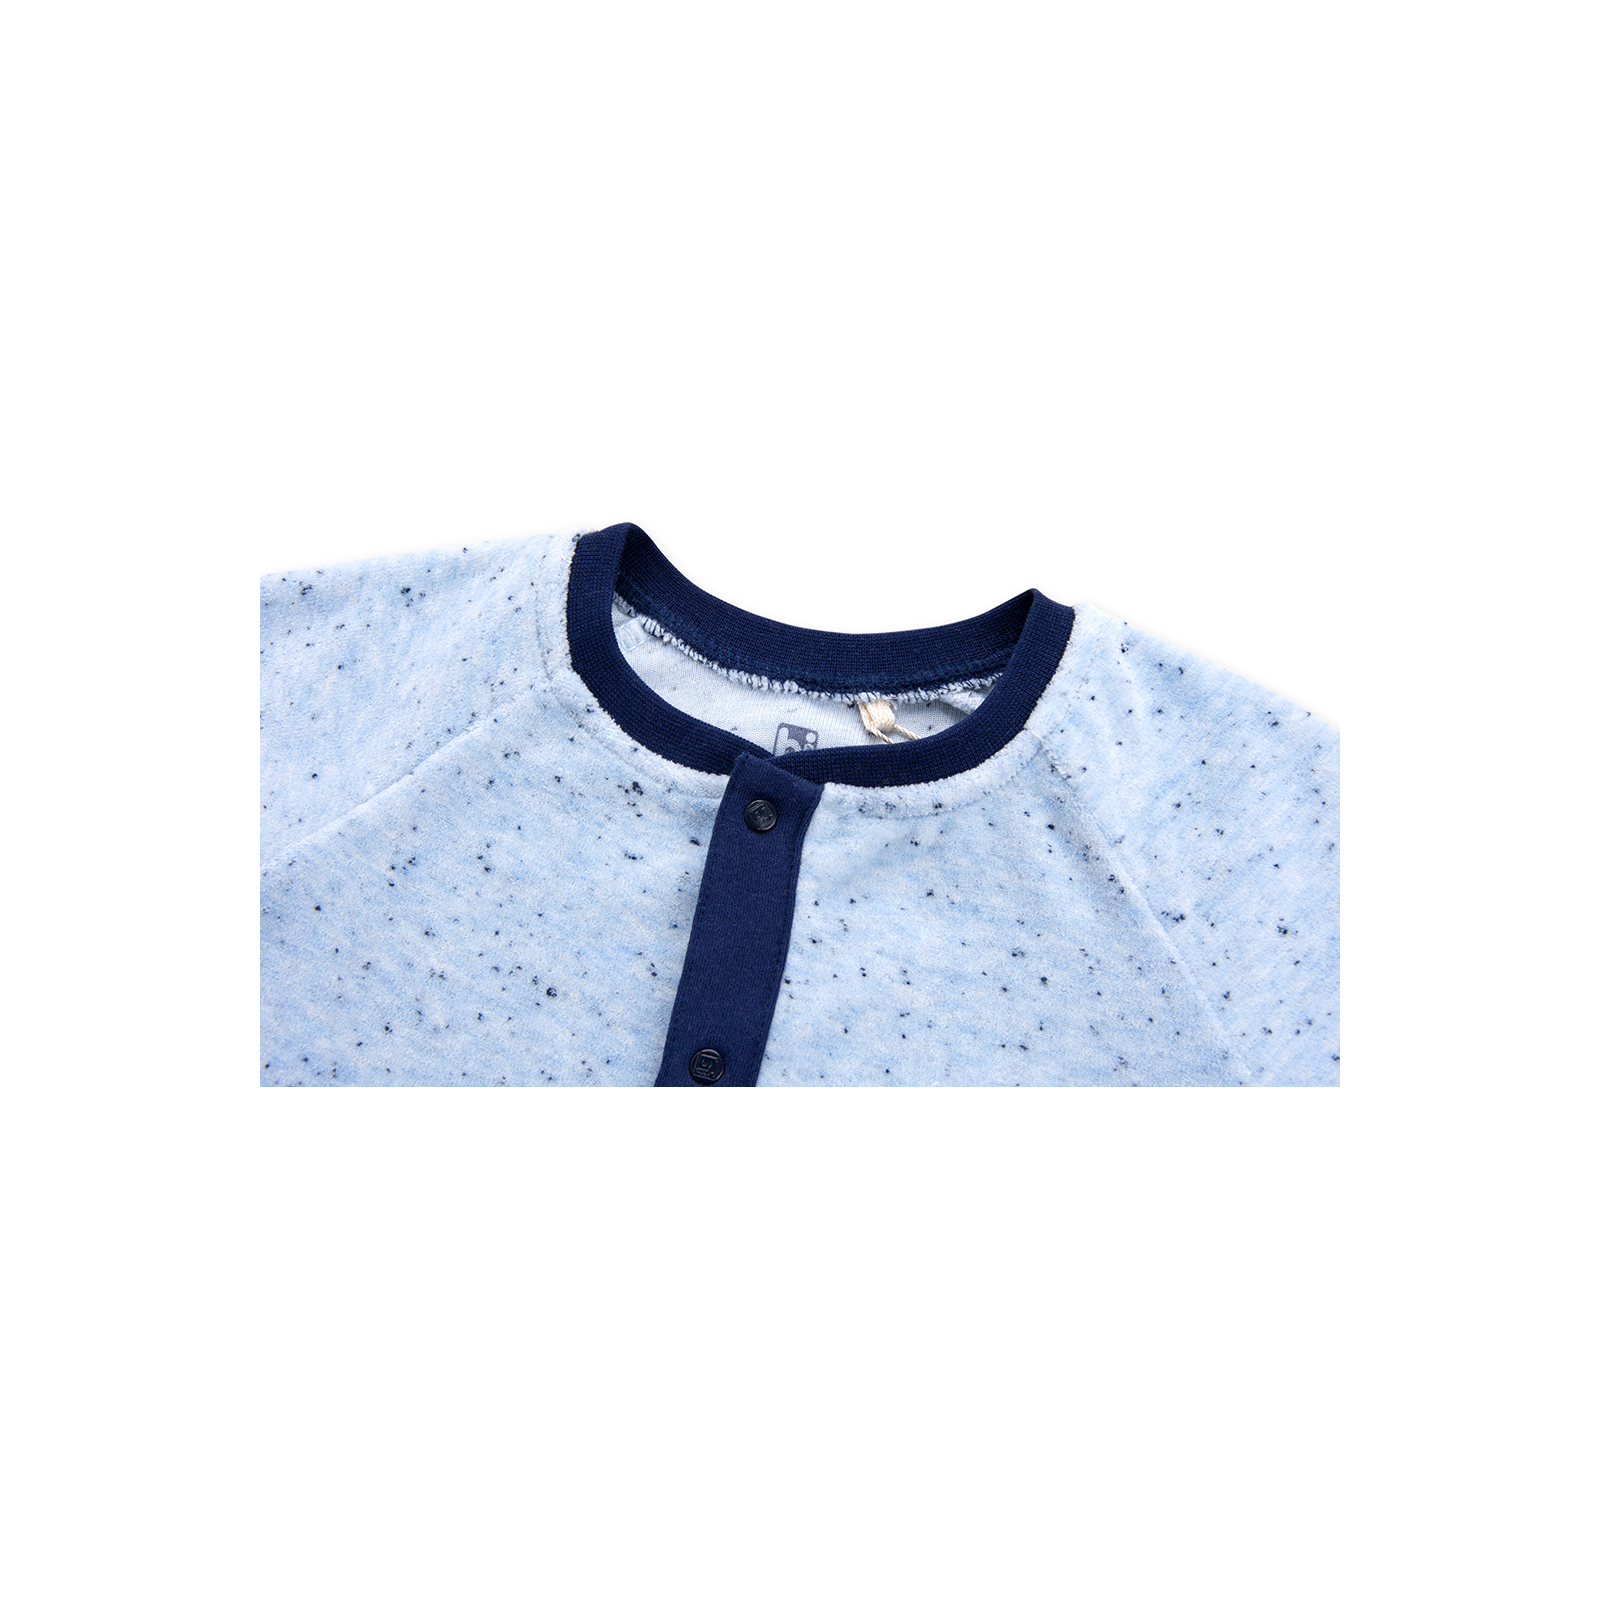 Человечек Bibaby велюровый с карманчиком "London" (60169-68B-blue) изображение 3